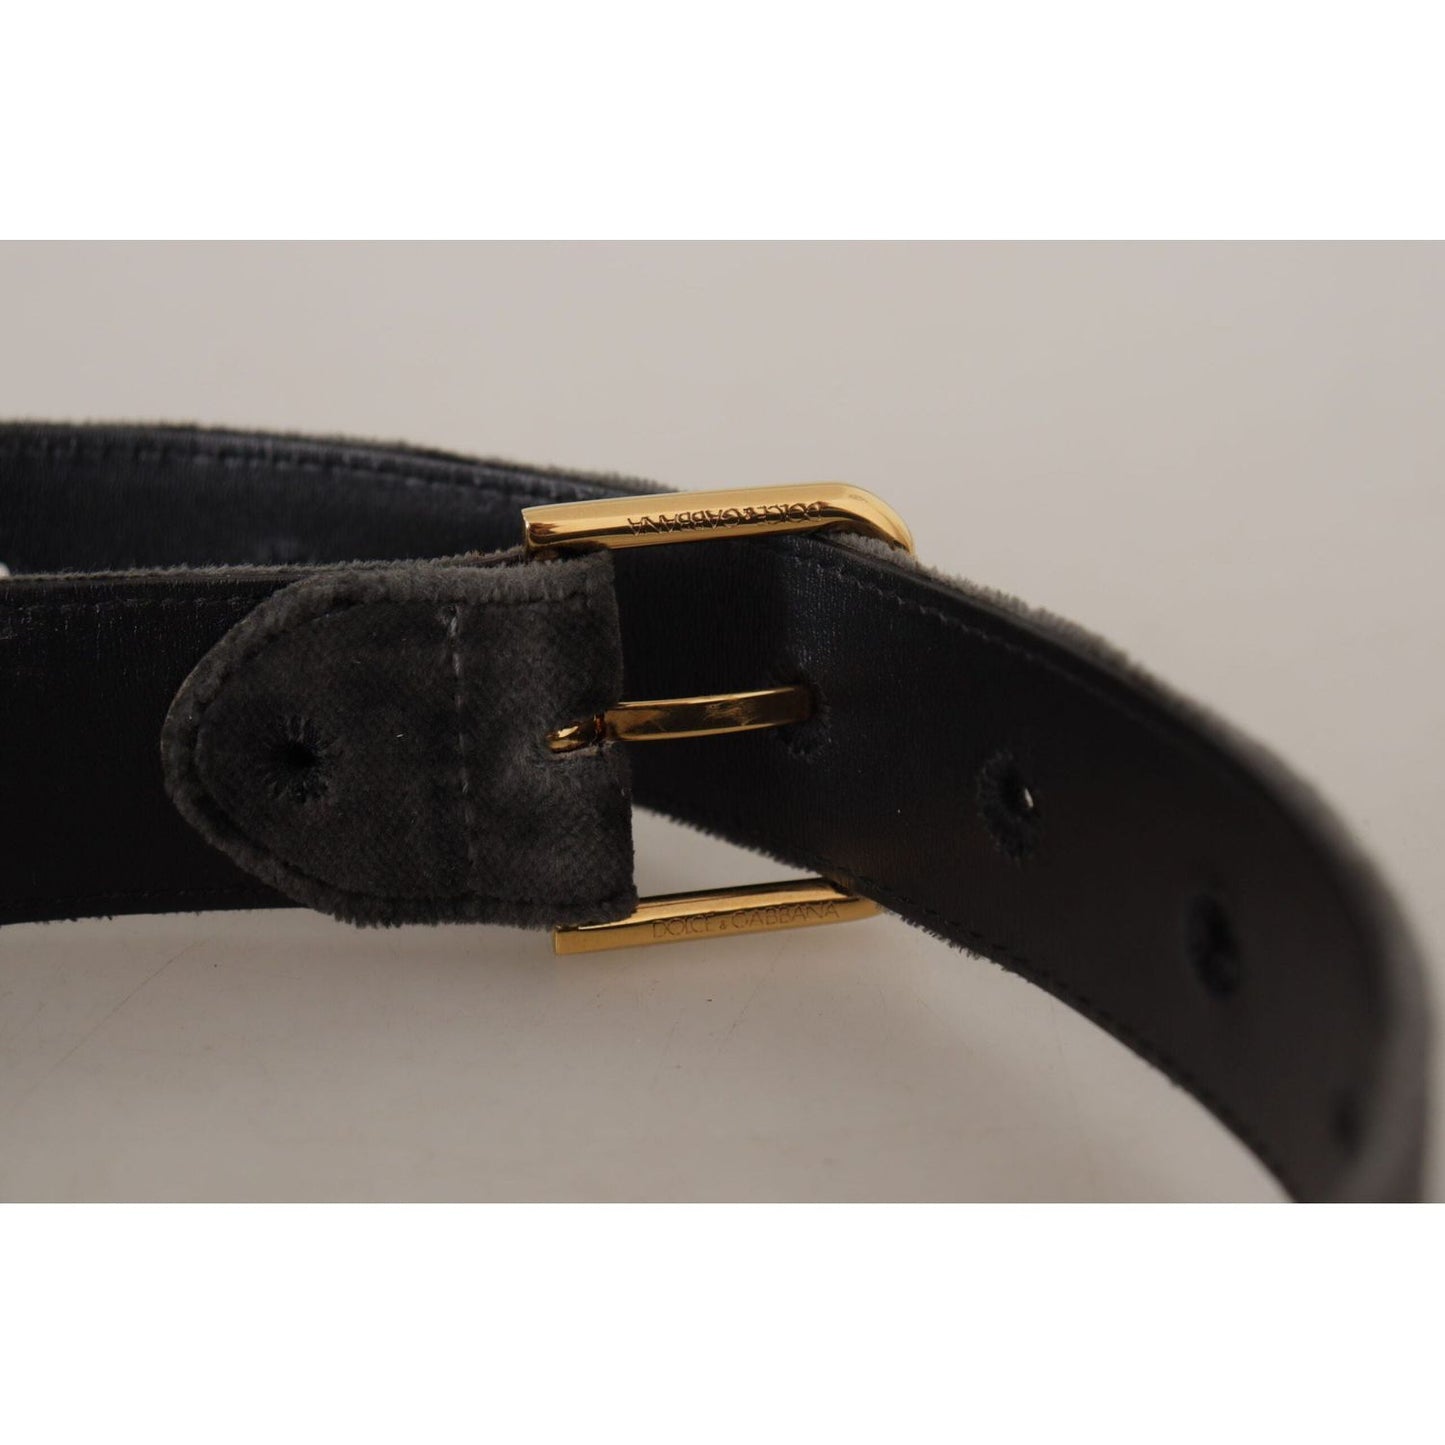 Dolce & Gabbana Elegant Velvet Belt with Engraved Buckle brown-velvet-gold-tone-logo-metal-waist-buckle-belt